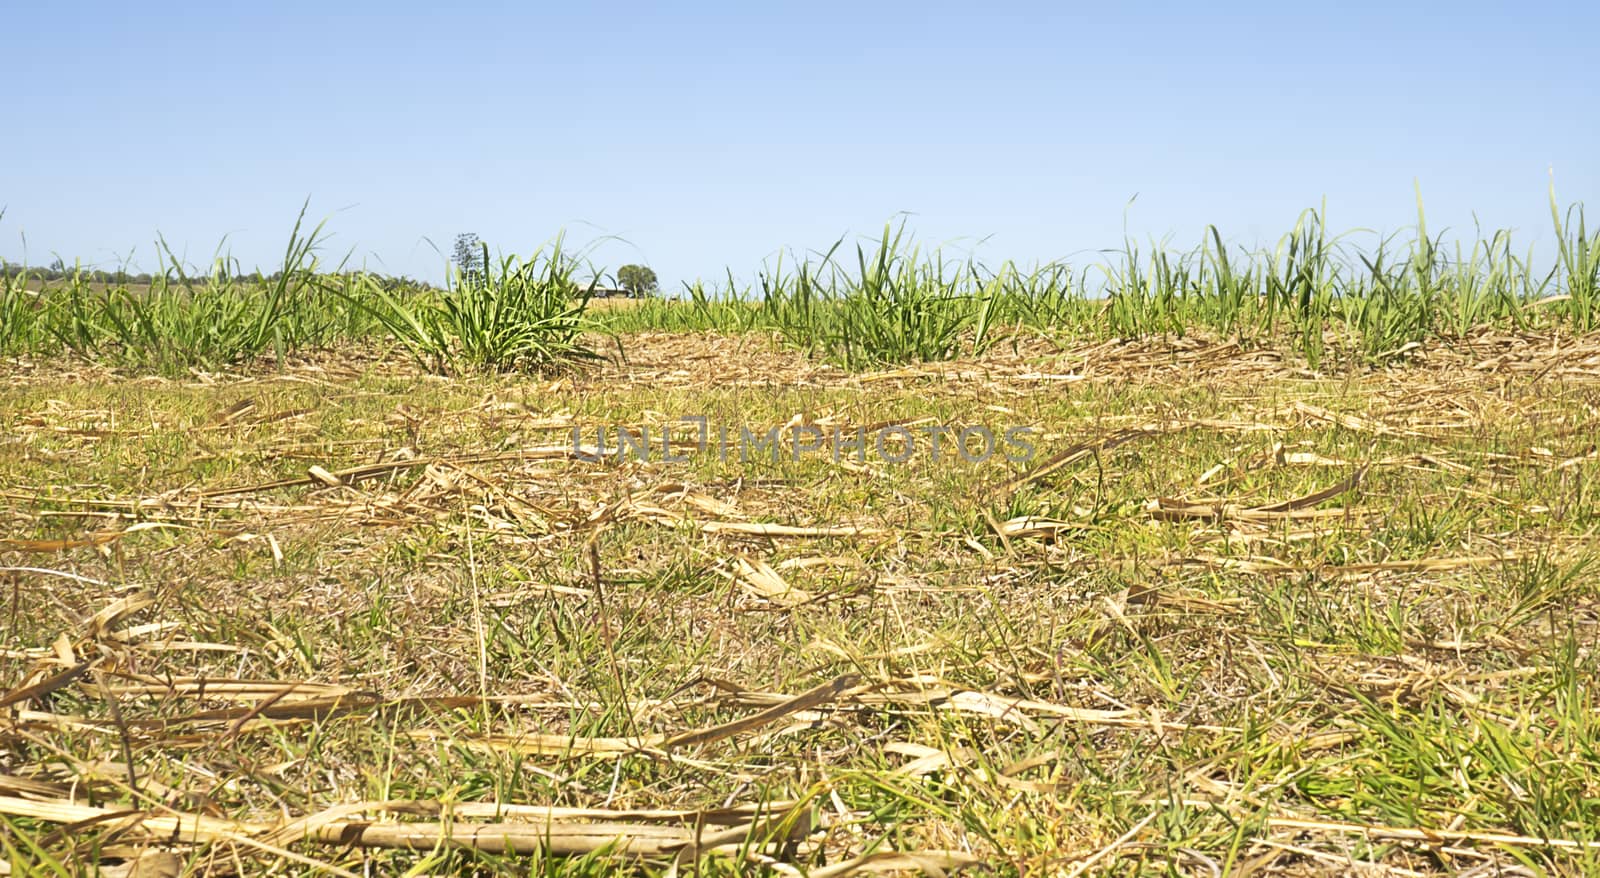 Australian Sugarcane Plantation After Harvest by sherj